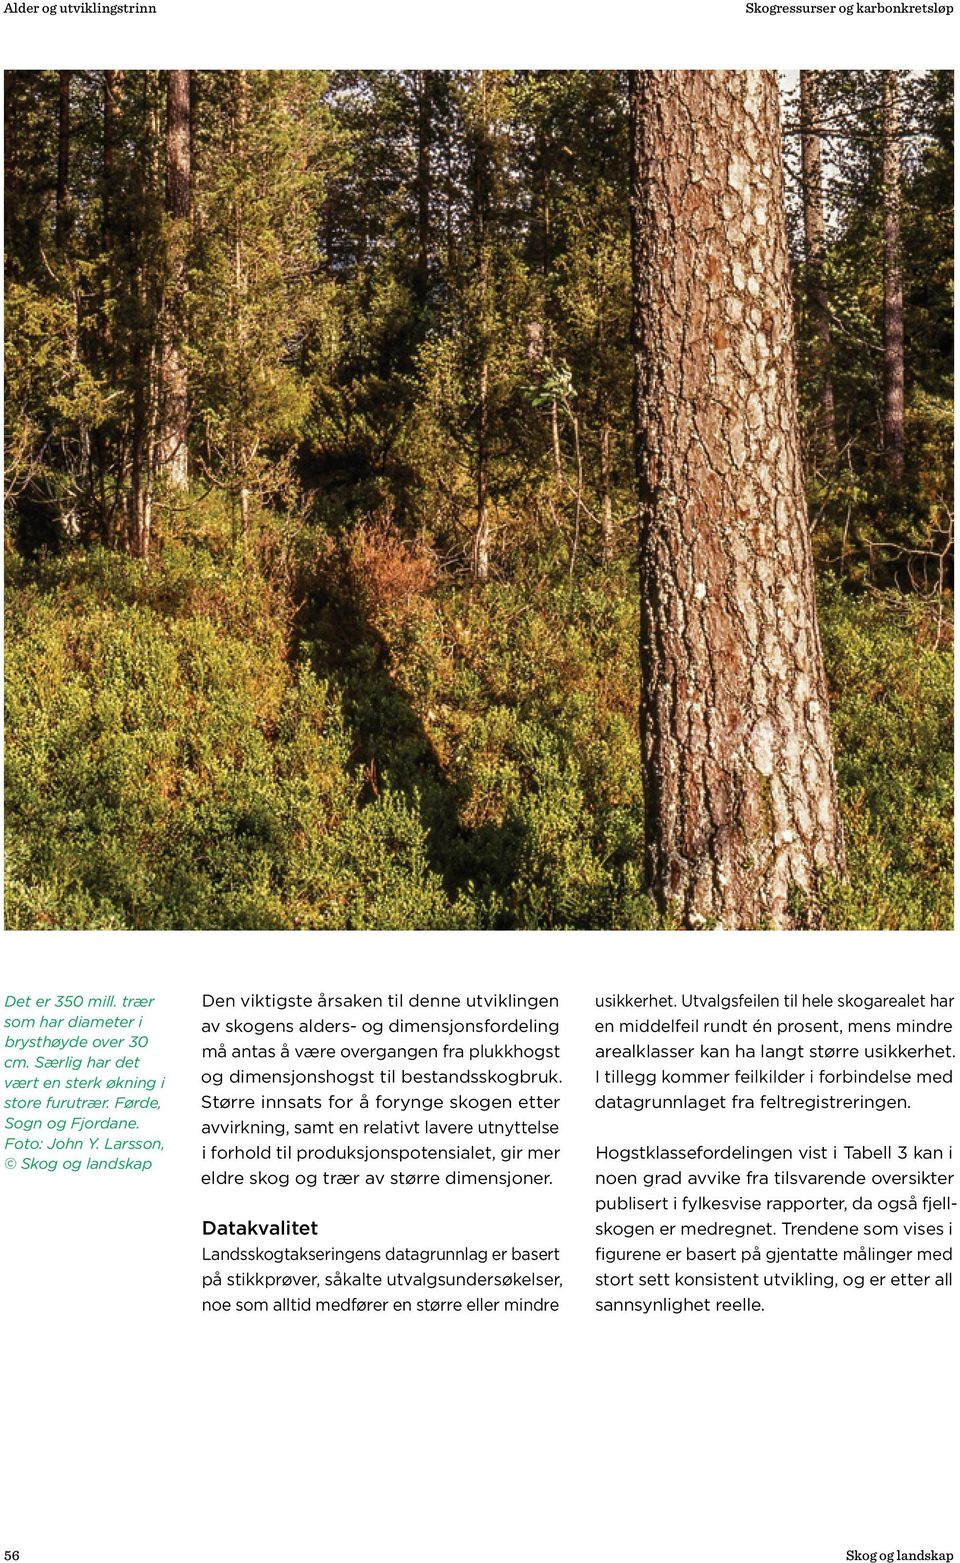 Større innsats for å forynge skogen etter avvirkning, samt en relativt lavere utnyttelse i forhold til produksjonspotensialet, gir mer eldre skog og trær av større dimensjoner.